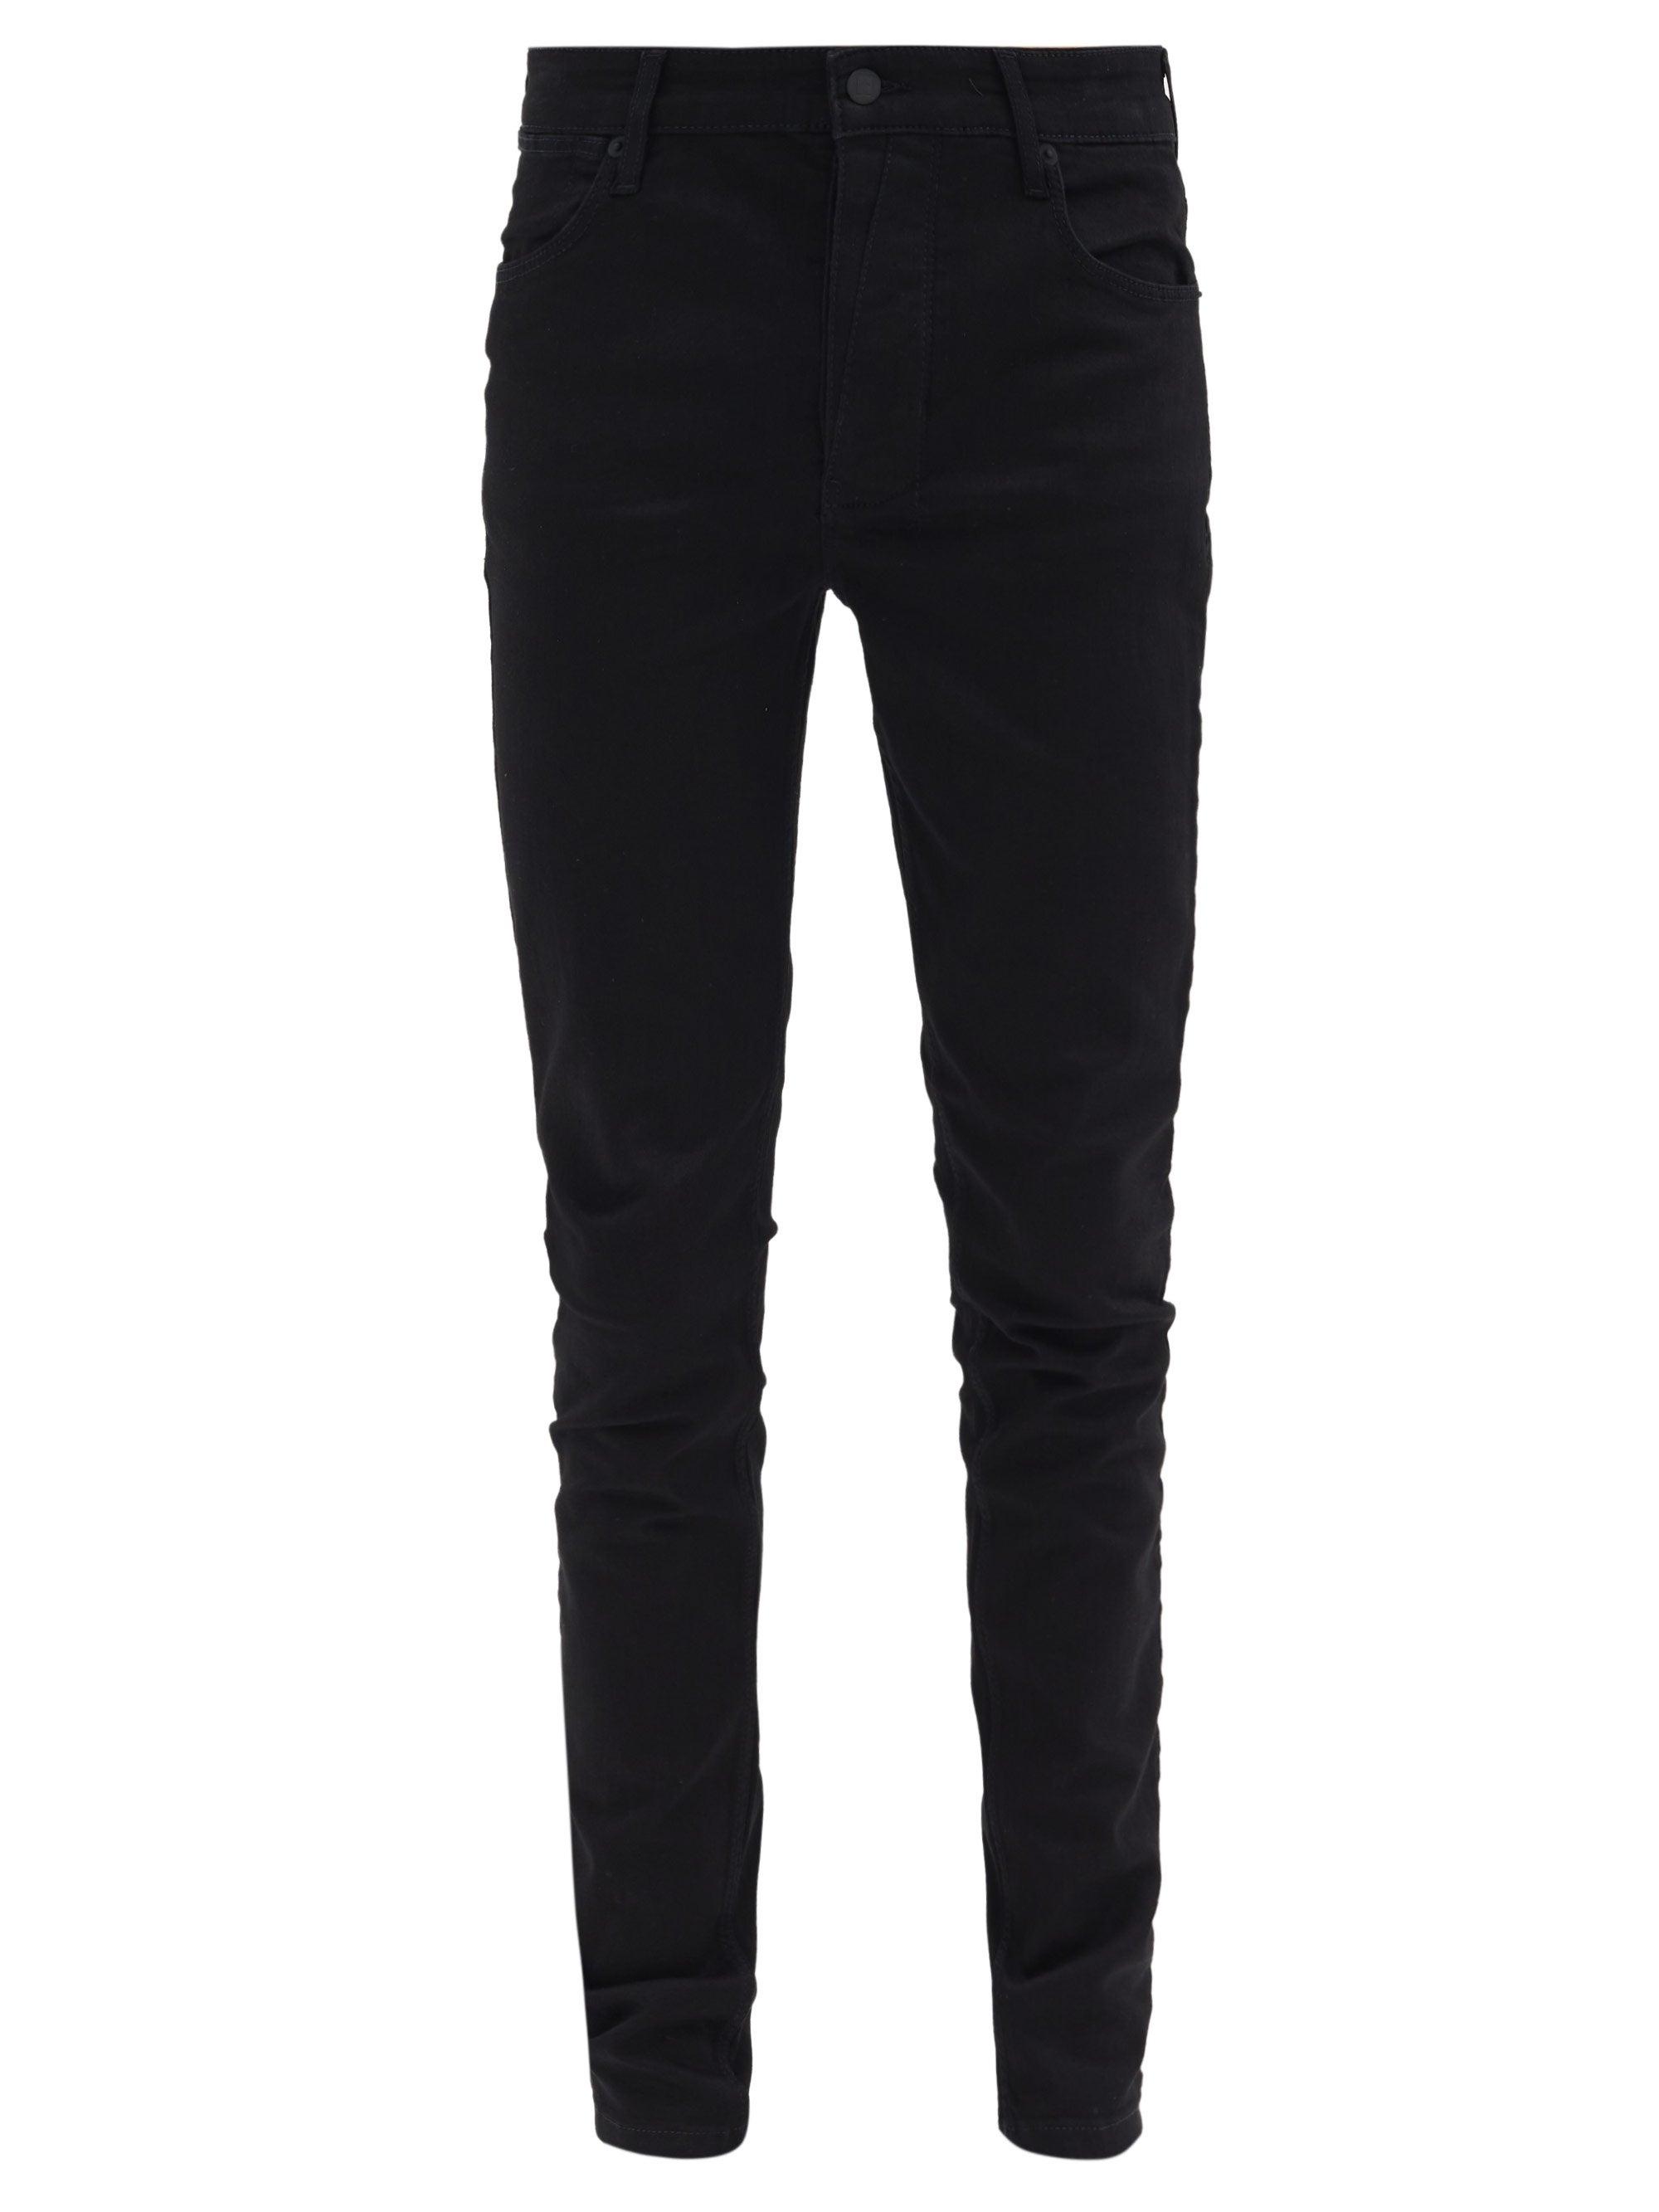 Ksubi Denim Van Winkle Skinny-fit Jeans in Black for Men - Lyst